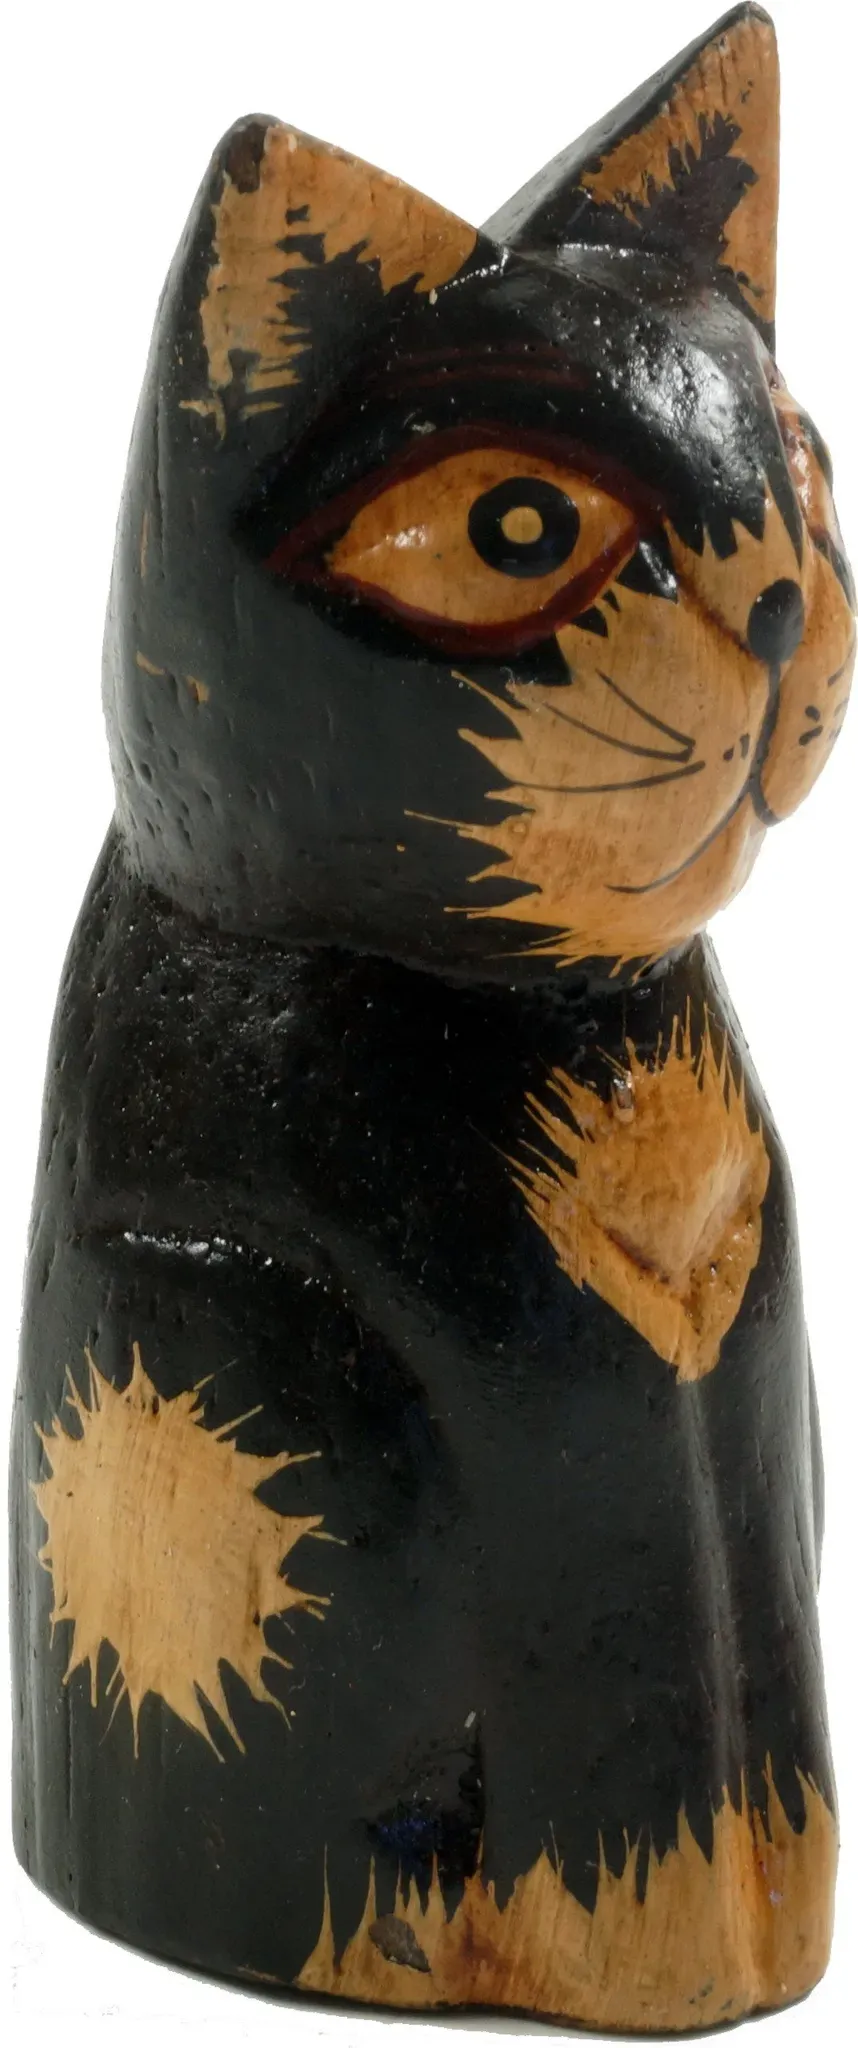 GURU SHOP Deko Katze, Holzkatze, Schwarz, Farbe: Schwarz, 9x4x4 cm, Tierfiguren